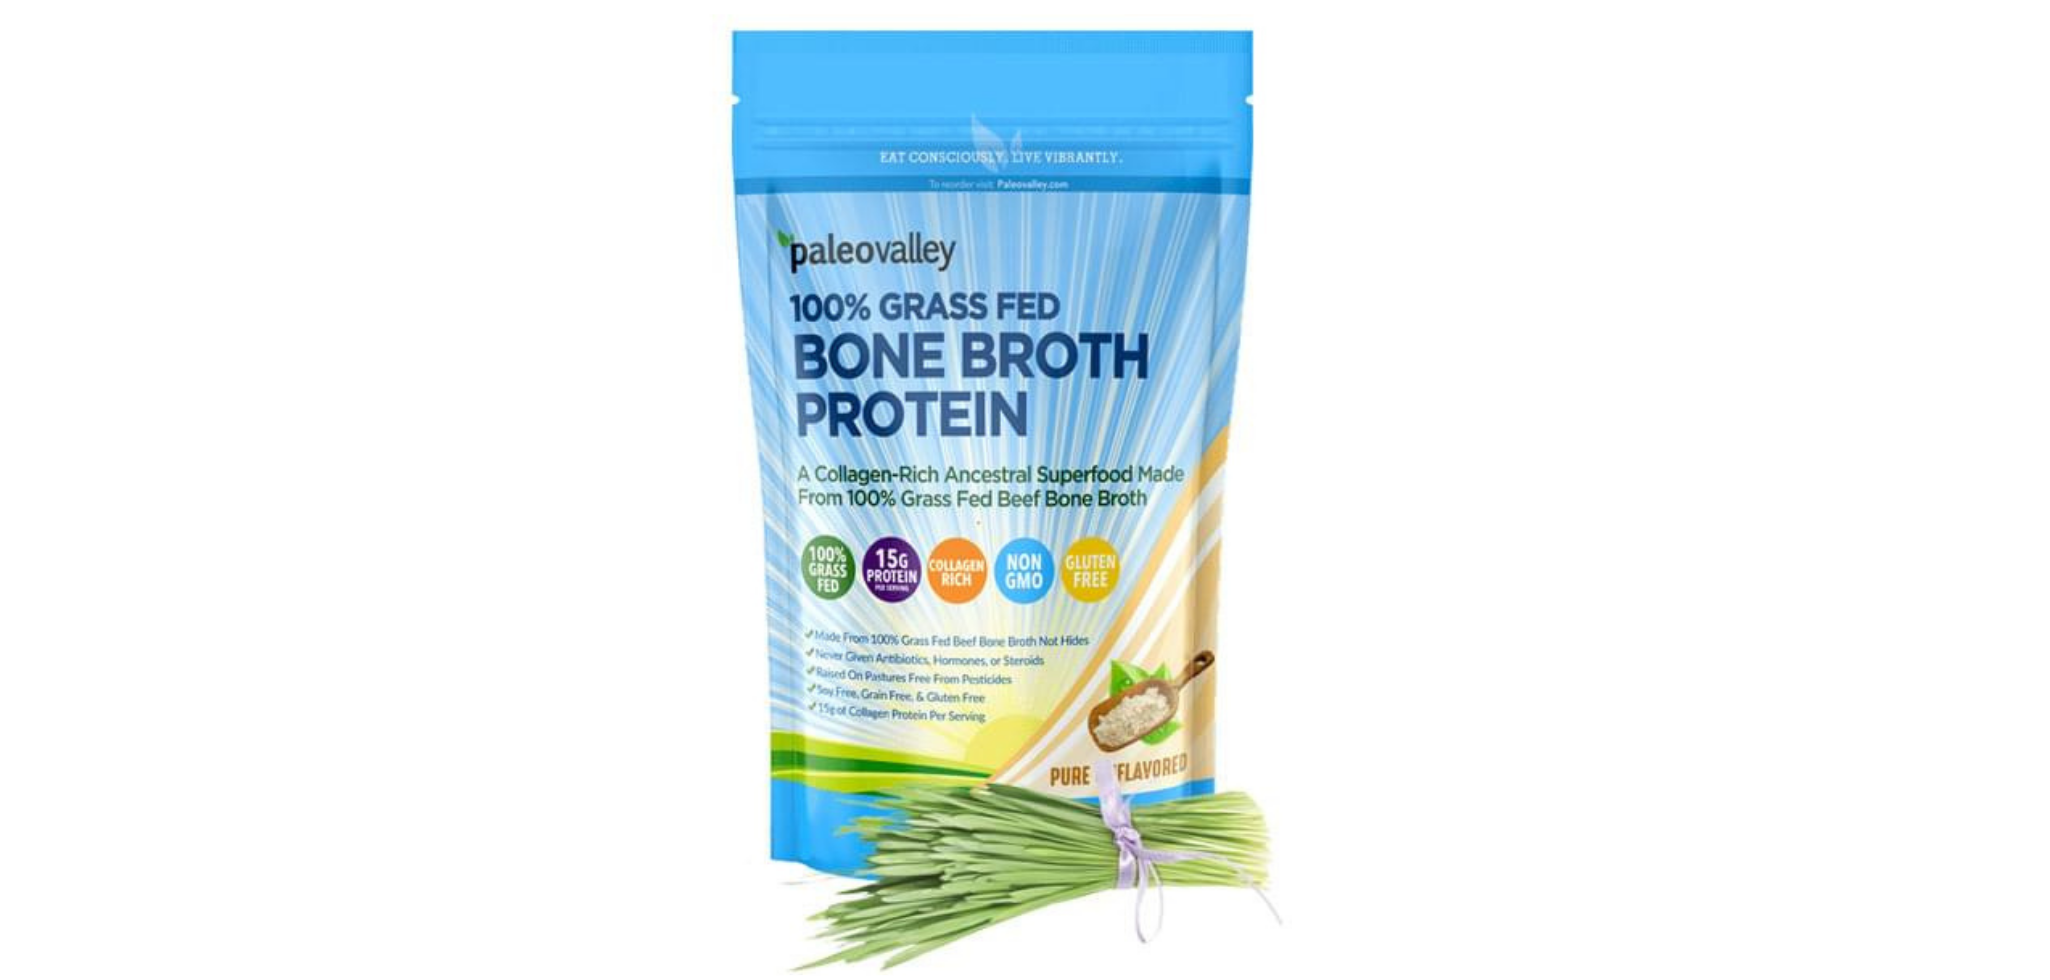 Paleovalley Bone Broth Protein